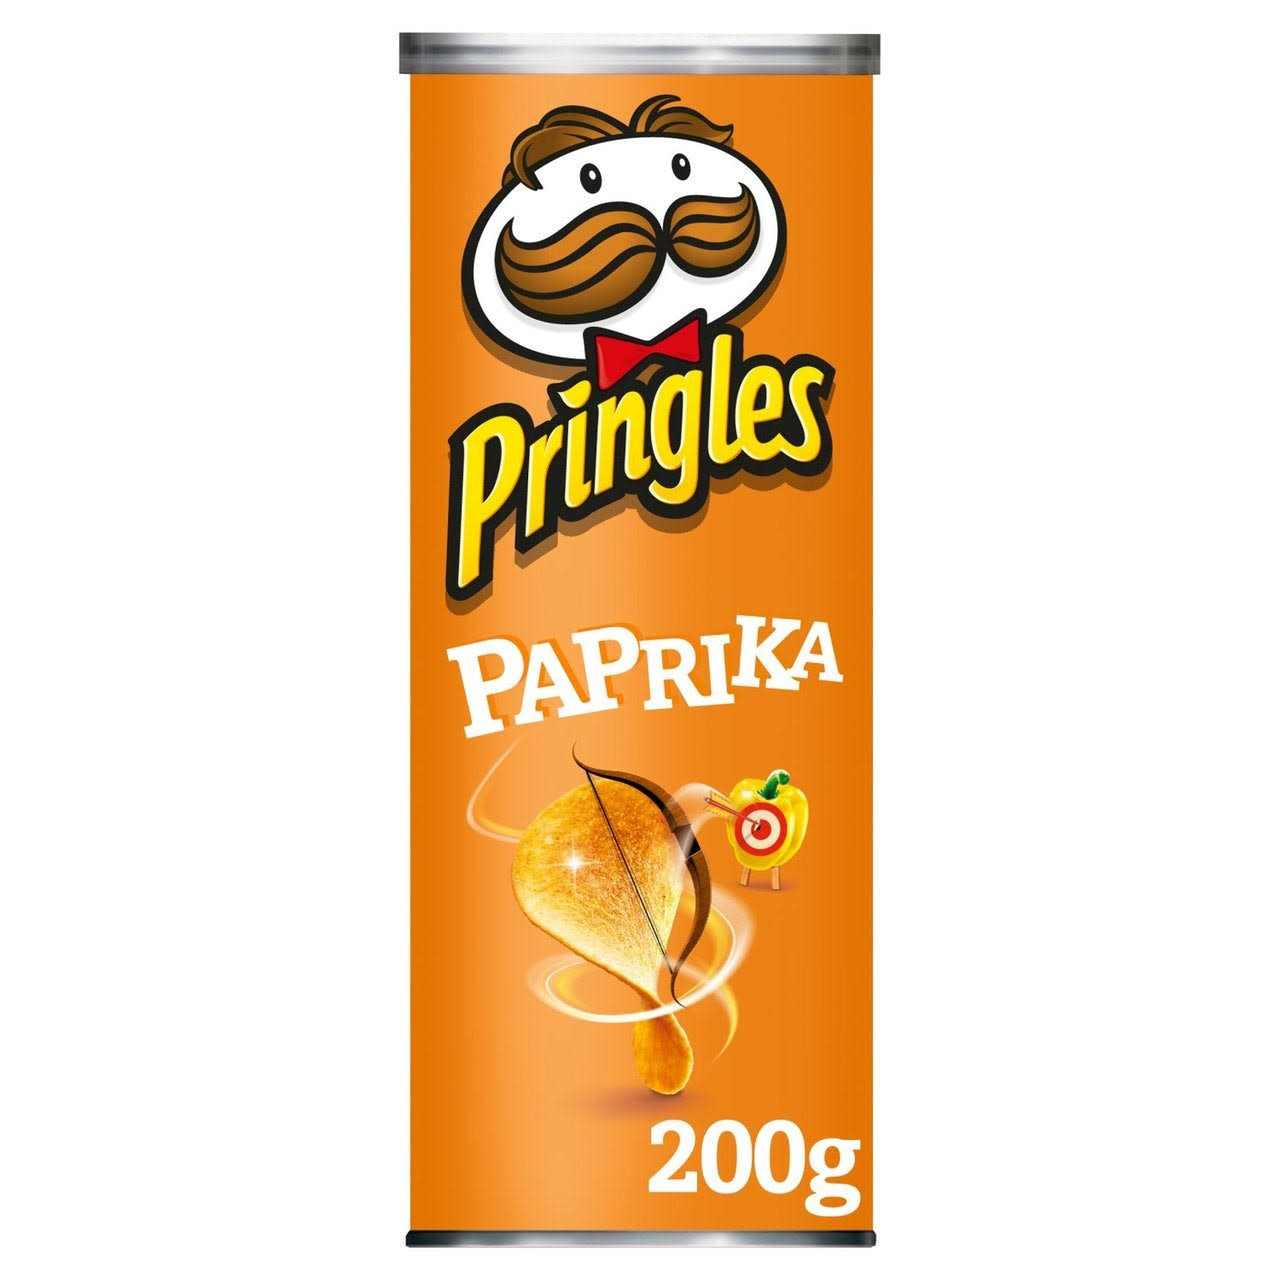 Pringles Paprika Crisps - 200g